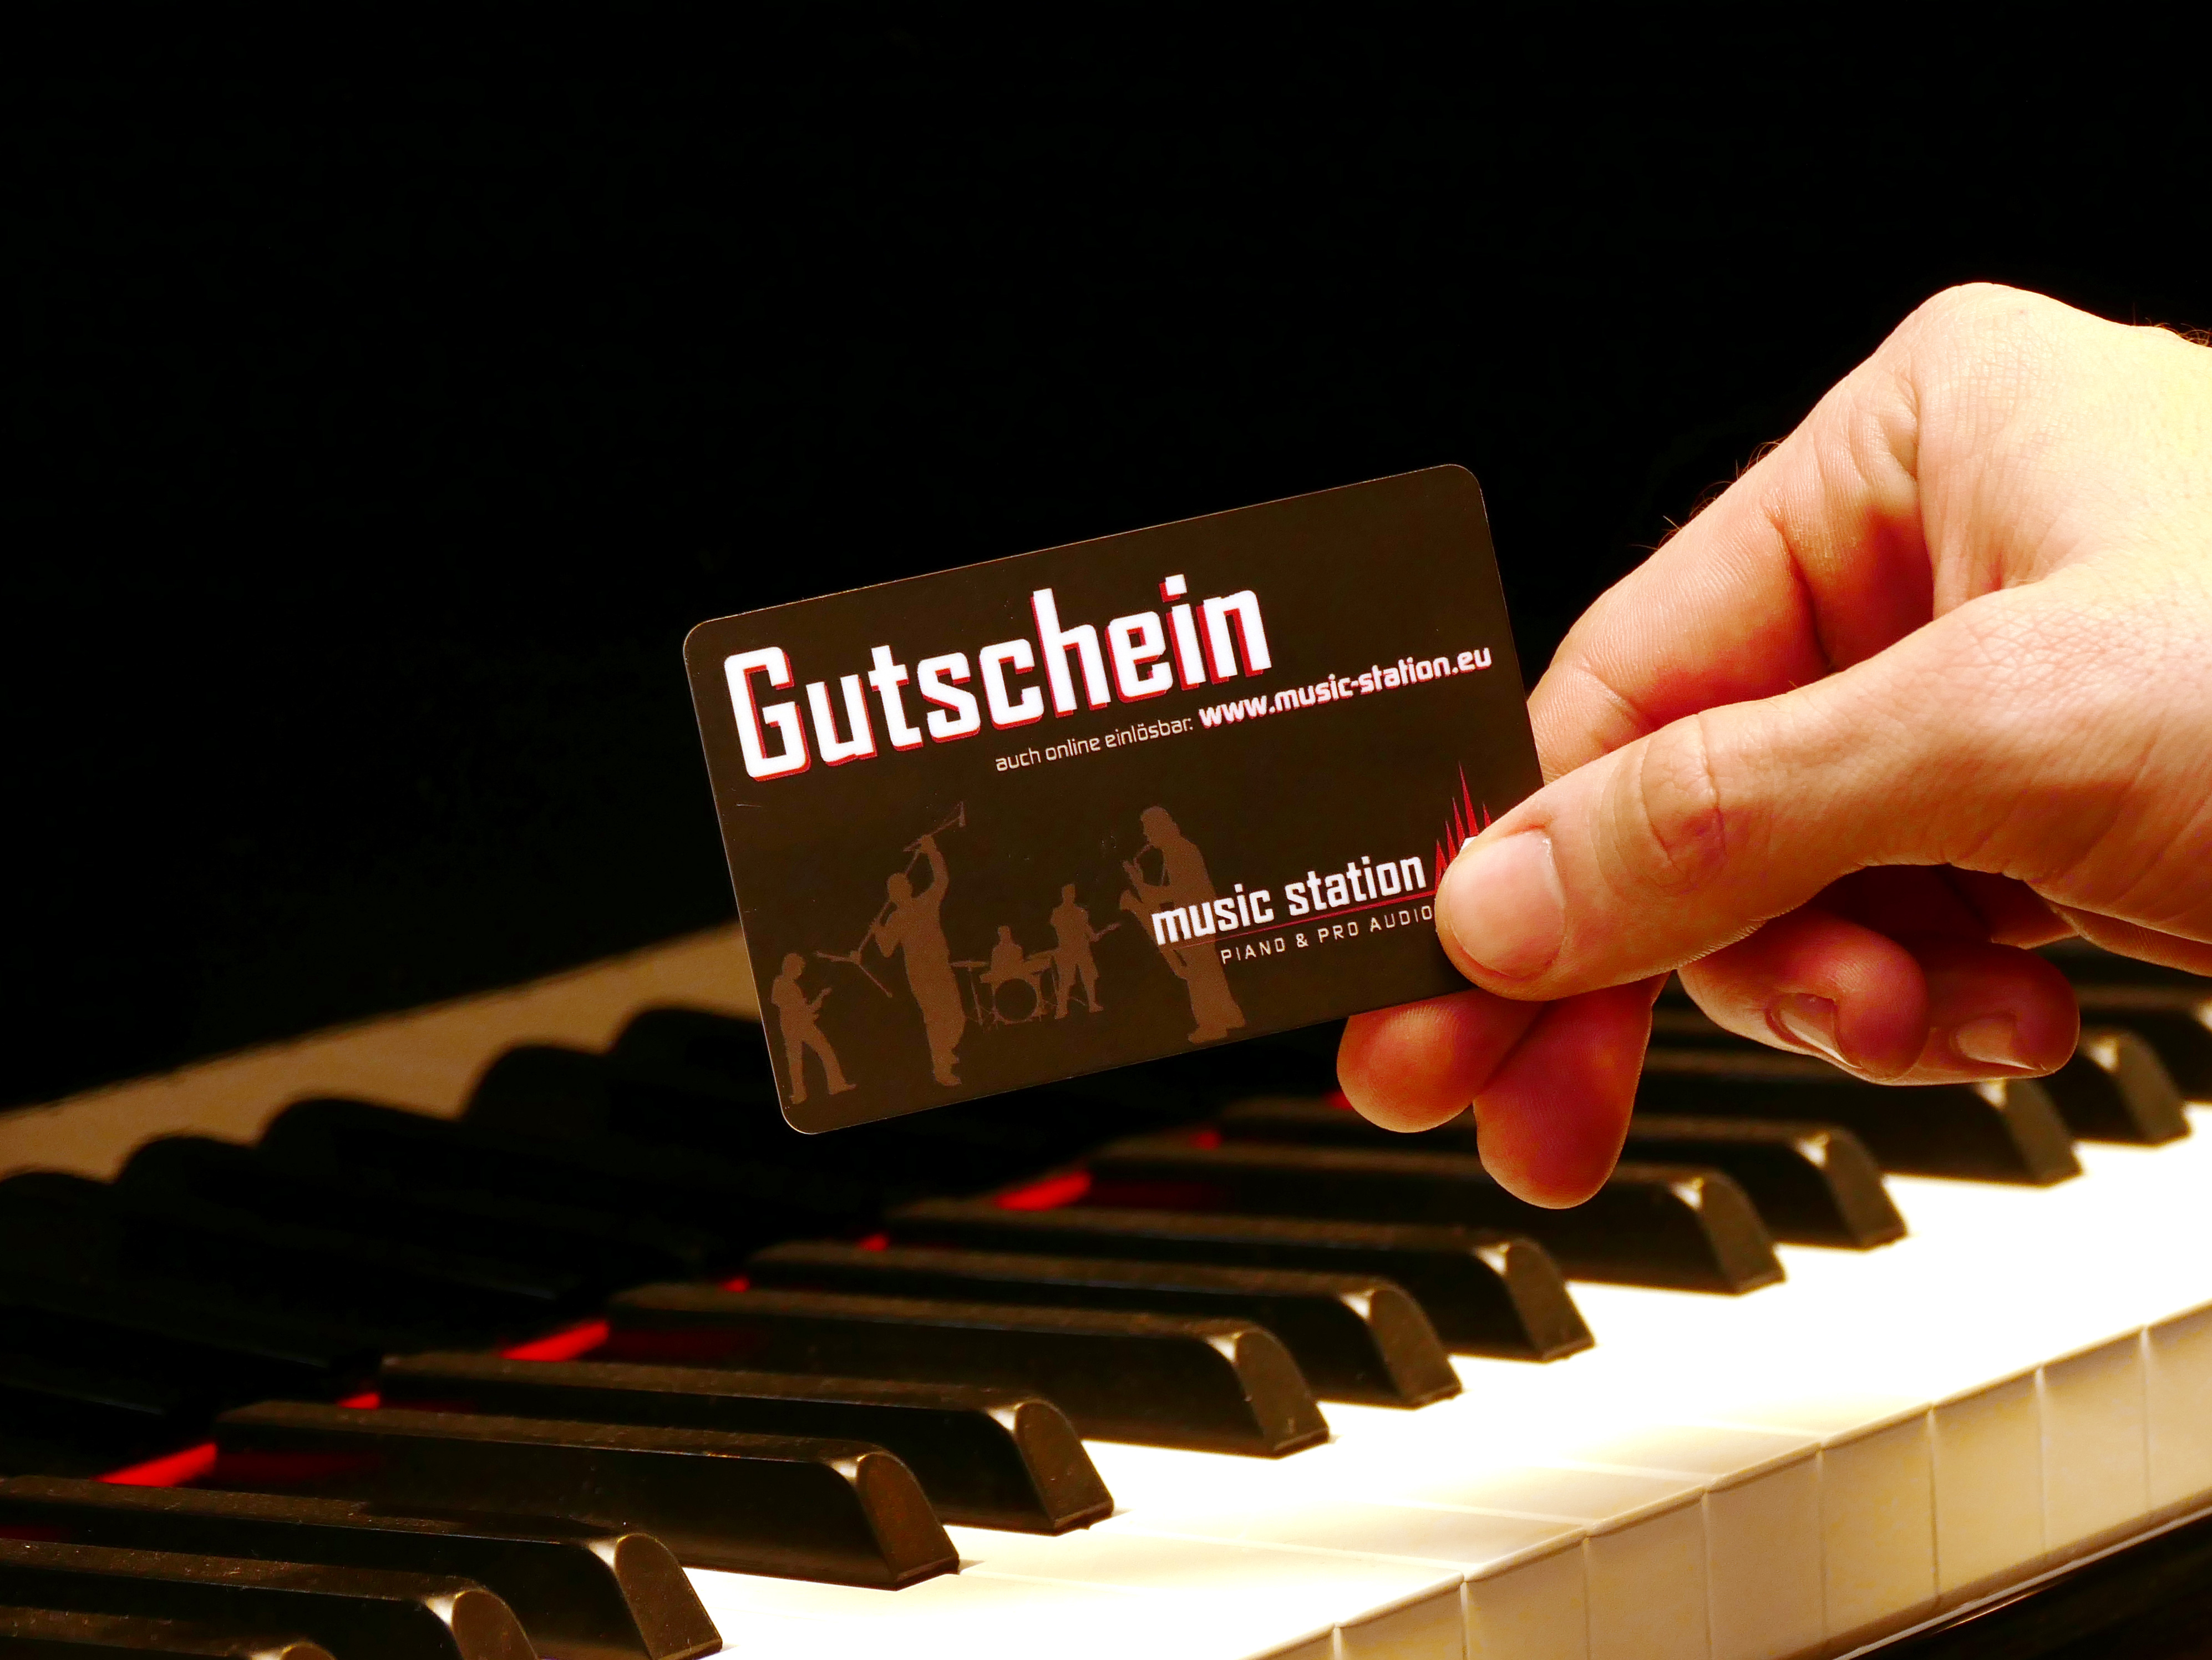 Music Station Gutschein 500 Euro